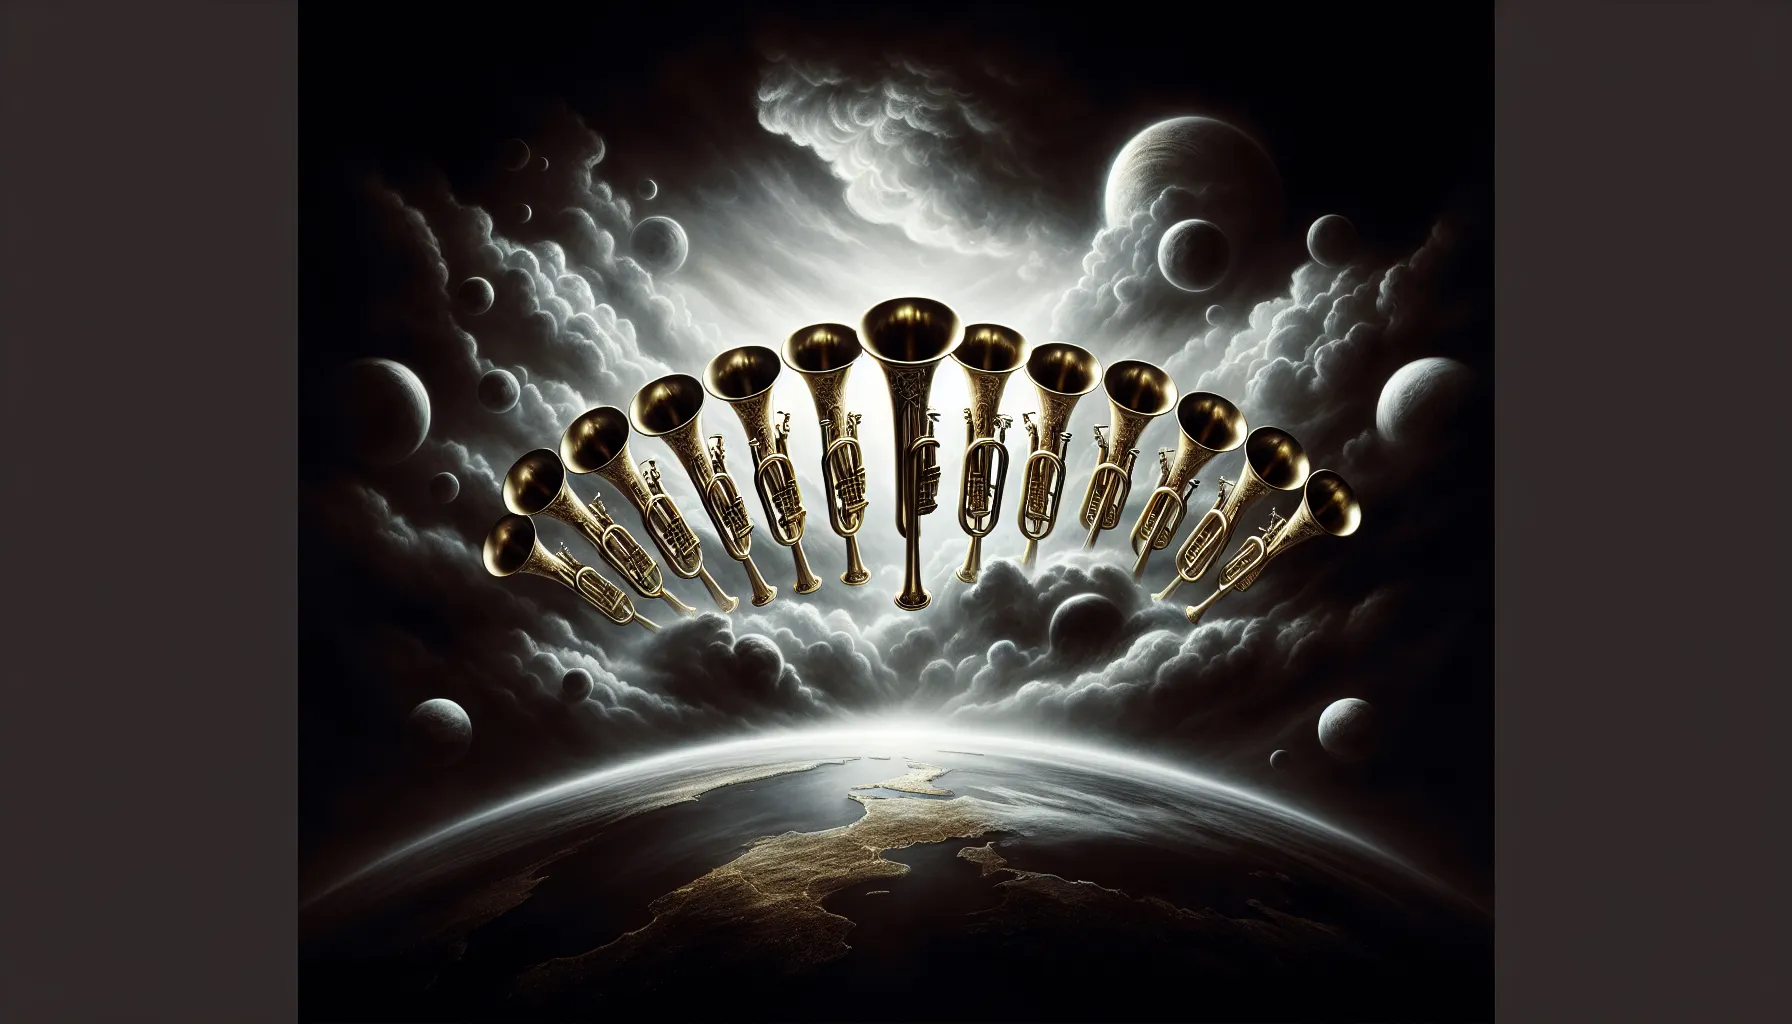 Representación visual de siete trompetas sobre fondo oscuro, simbolizando la profecía apocalíptica de la Biblia.